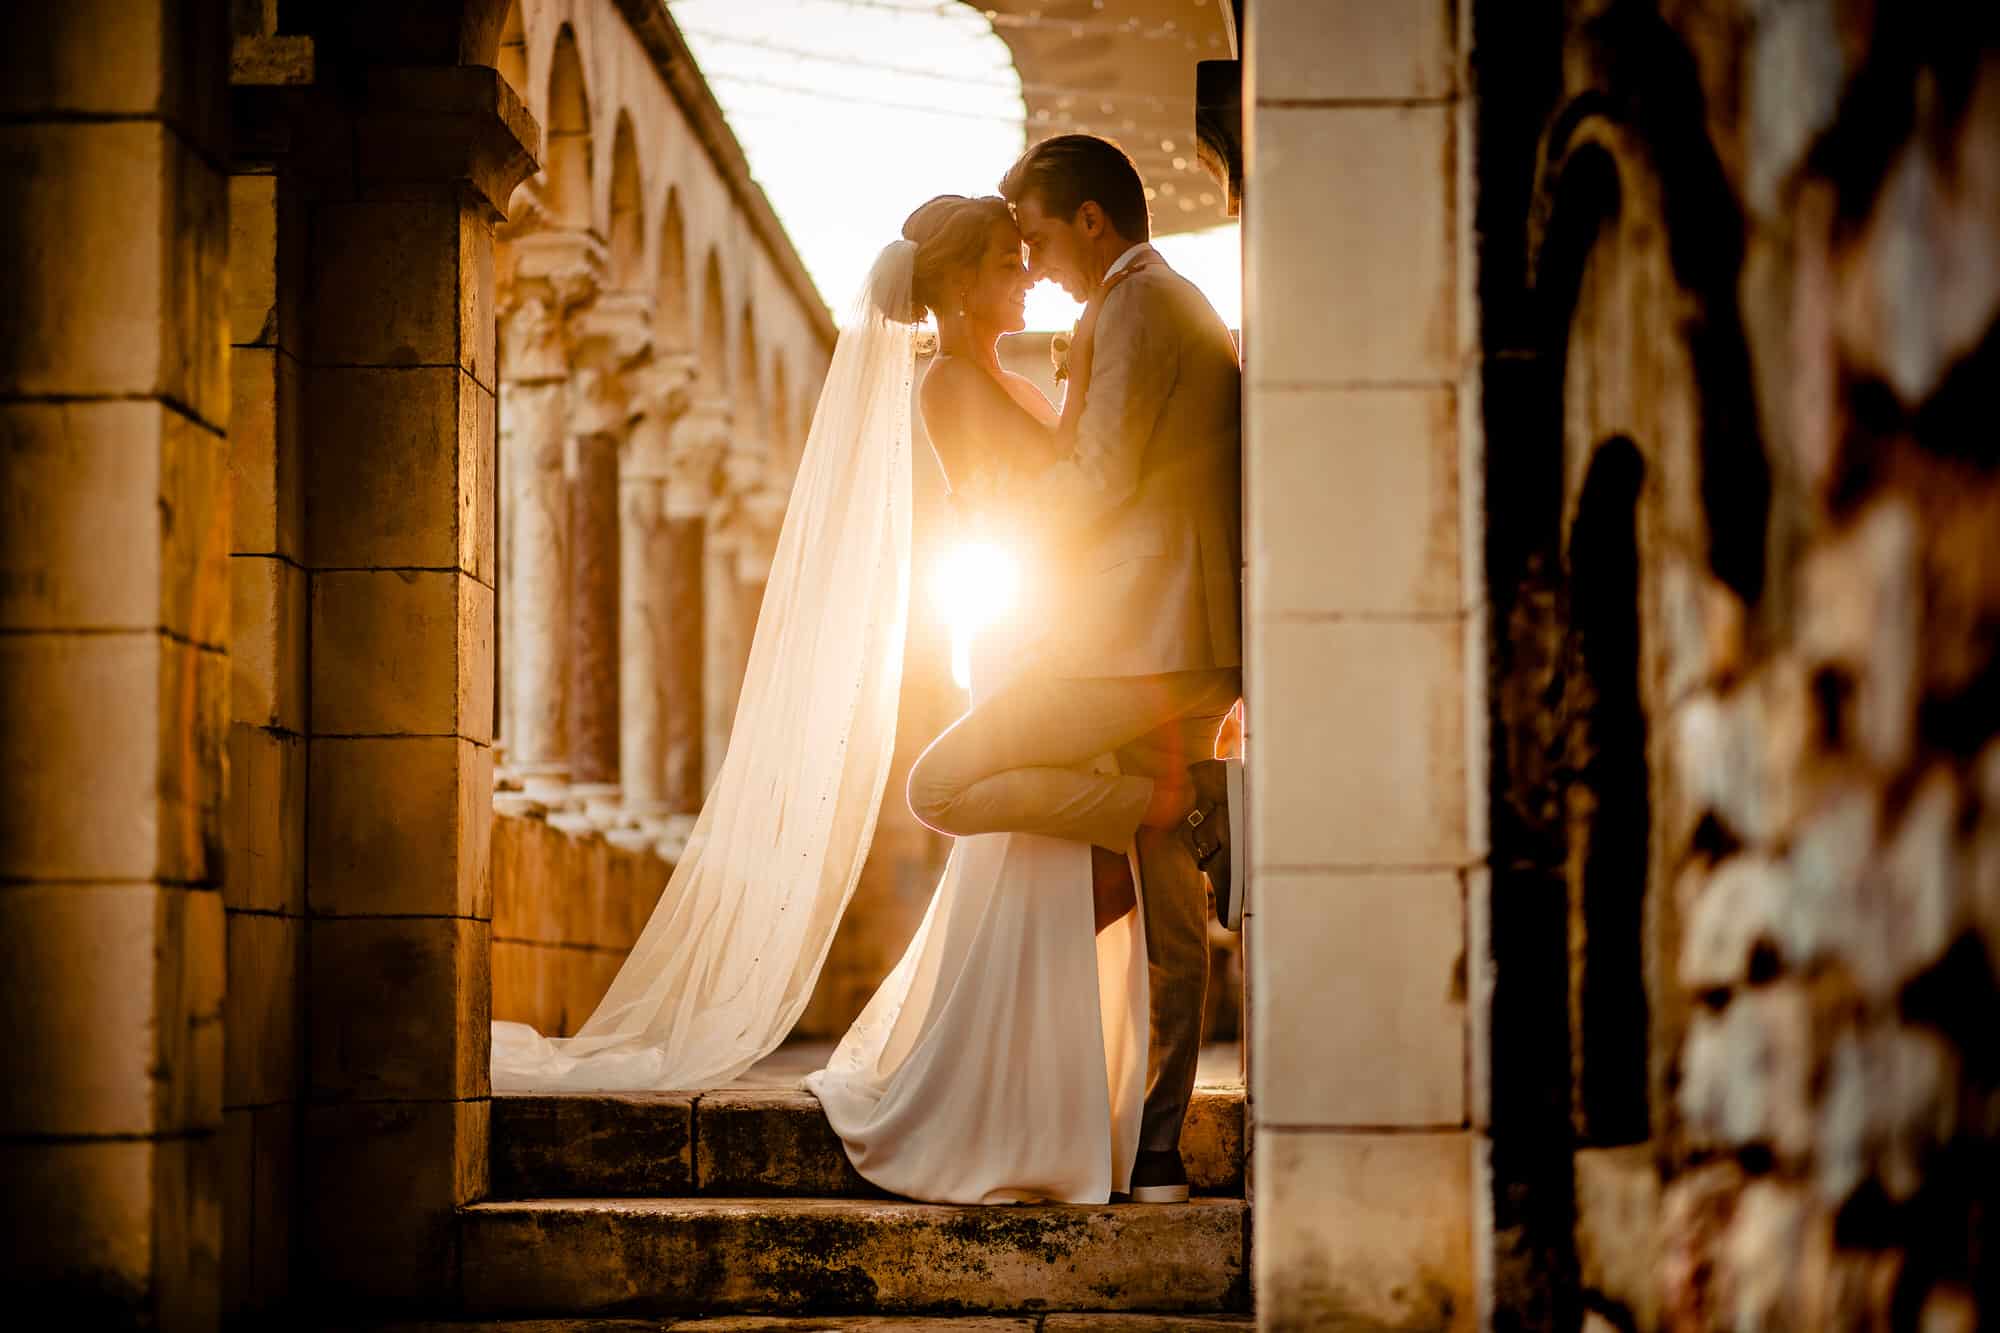 "Nauw verbonden bruidspaar, stralend van liefde, vastgelegd door een meesterlijke bruidsfotograaf op hun trouwdag."